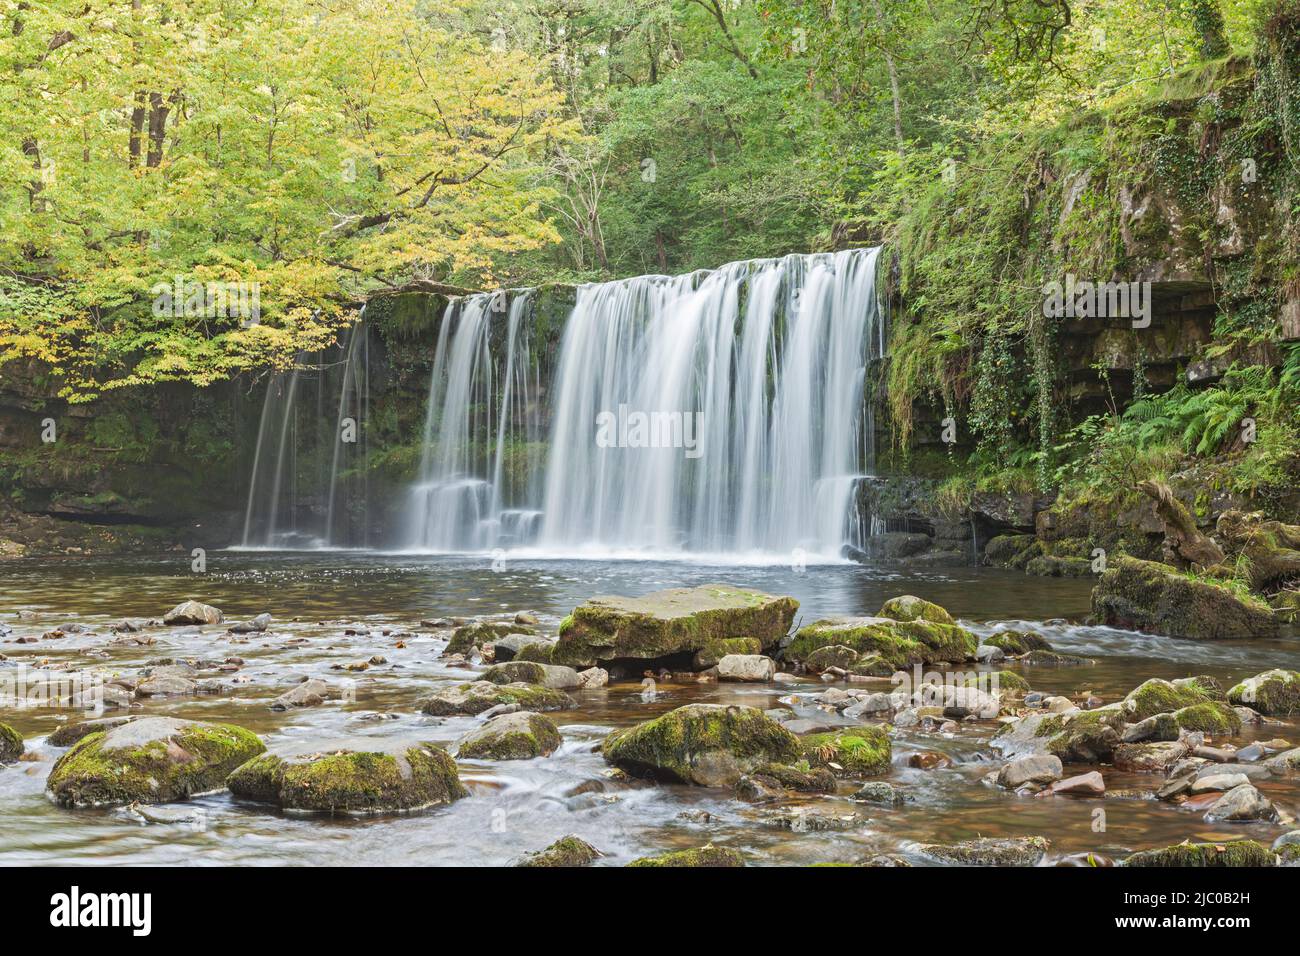 Sgwd Ddwli Uchaf (Upper Gushing Falls), sur la rivière Nedd Fechan, entre Pont Melin-fach et Pontneddfechan, parc national de Brecon Beacons, sud du pays de Galles Banque D'Images